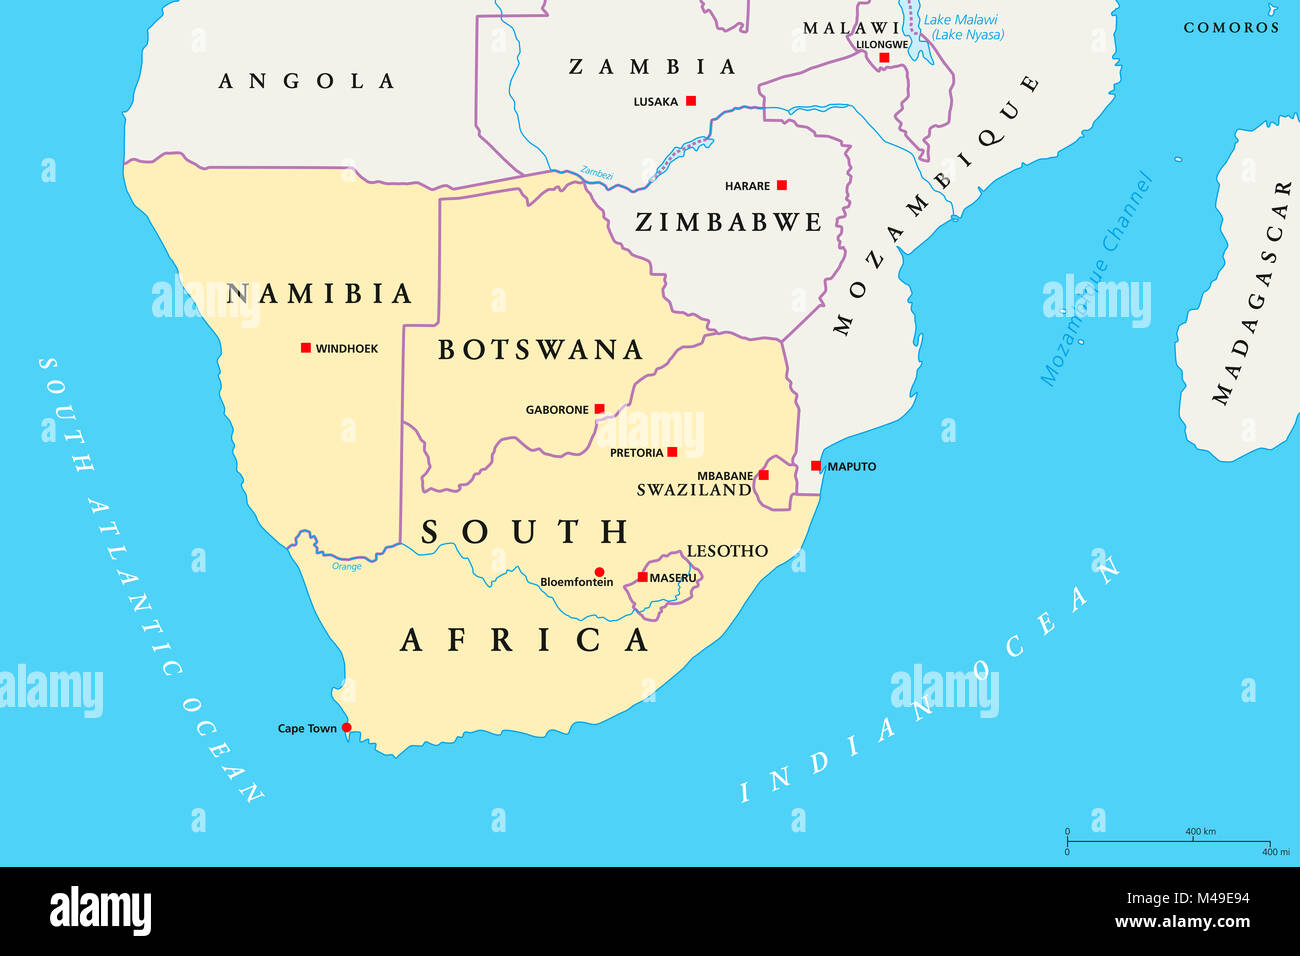 L'Afrique du Sud carte politique de la région. Région la plus méridionale du continent africain. L'Afrique du Sud, Namibie, Botswana, Swaziland et Lesotho. Banque D'Images